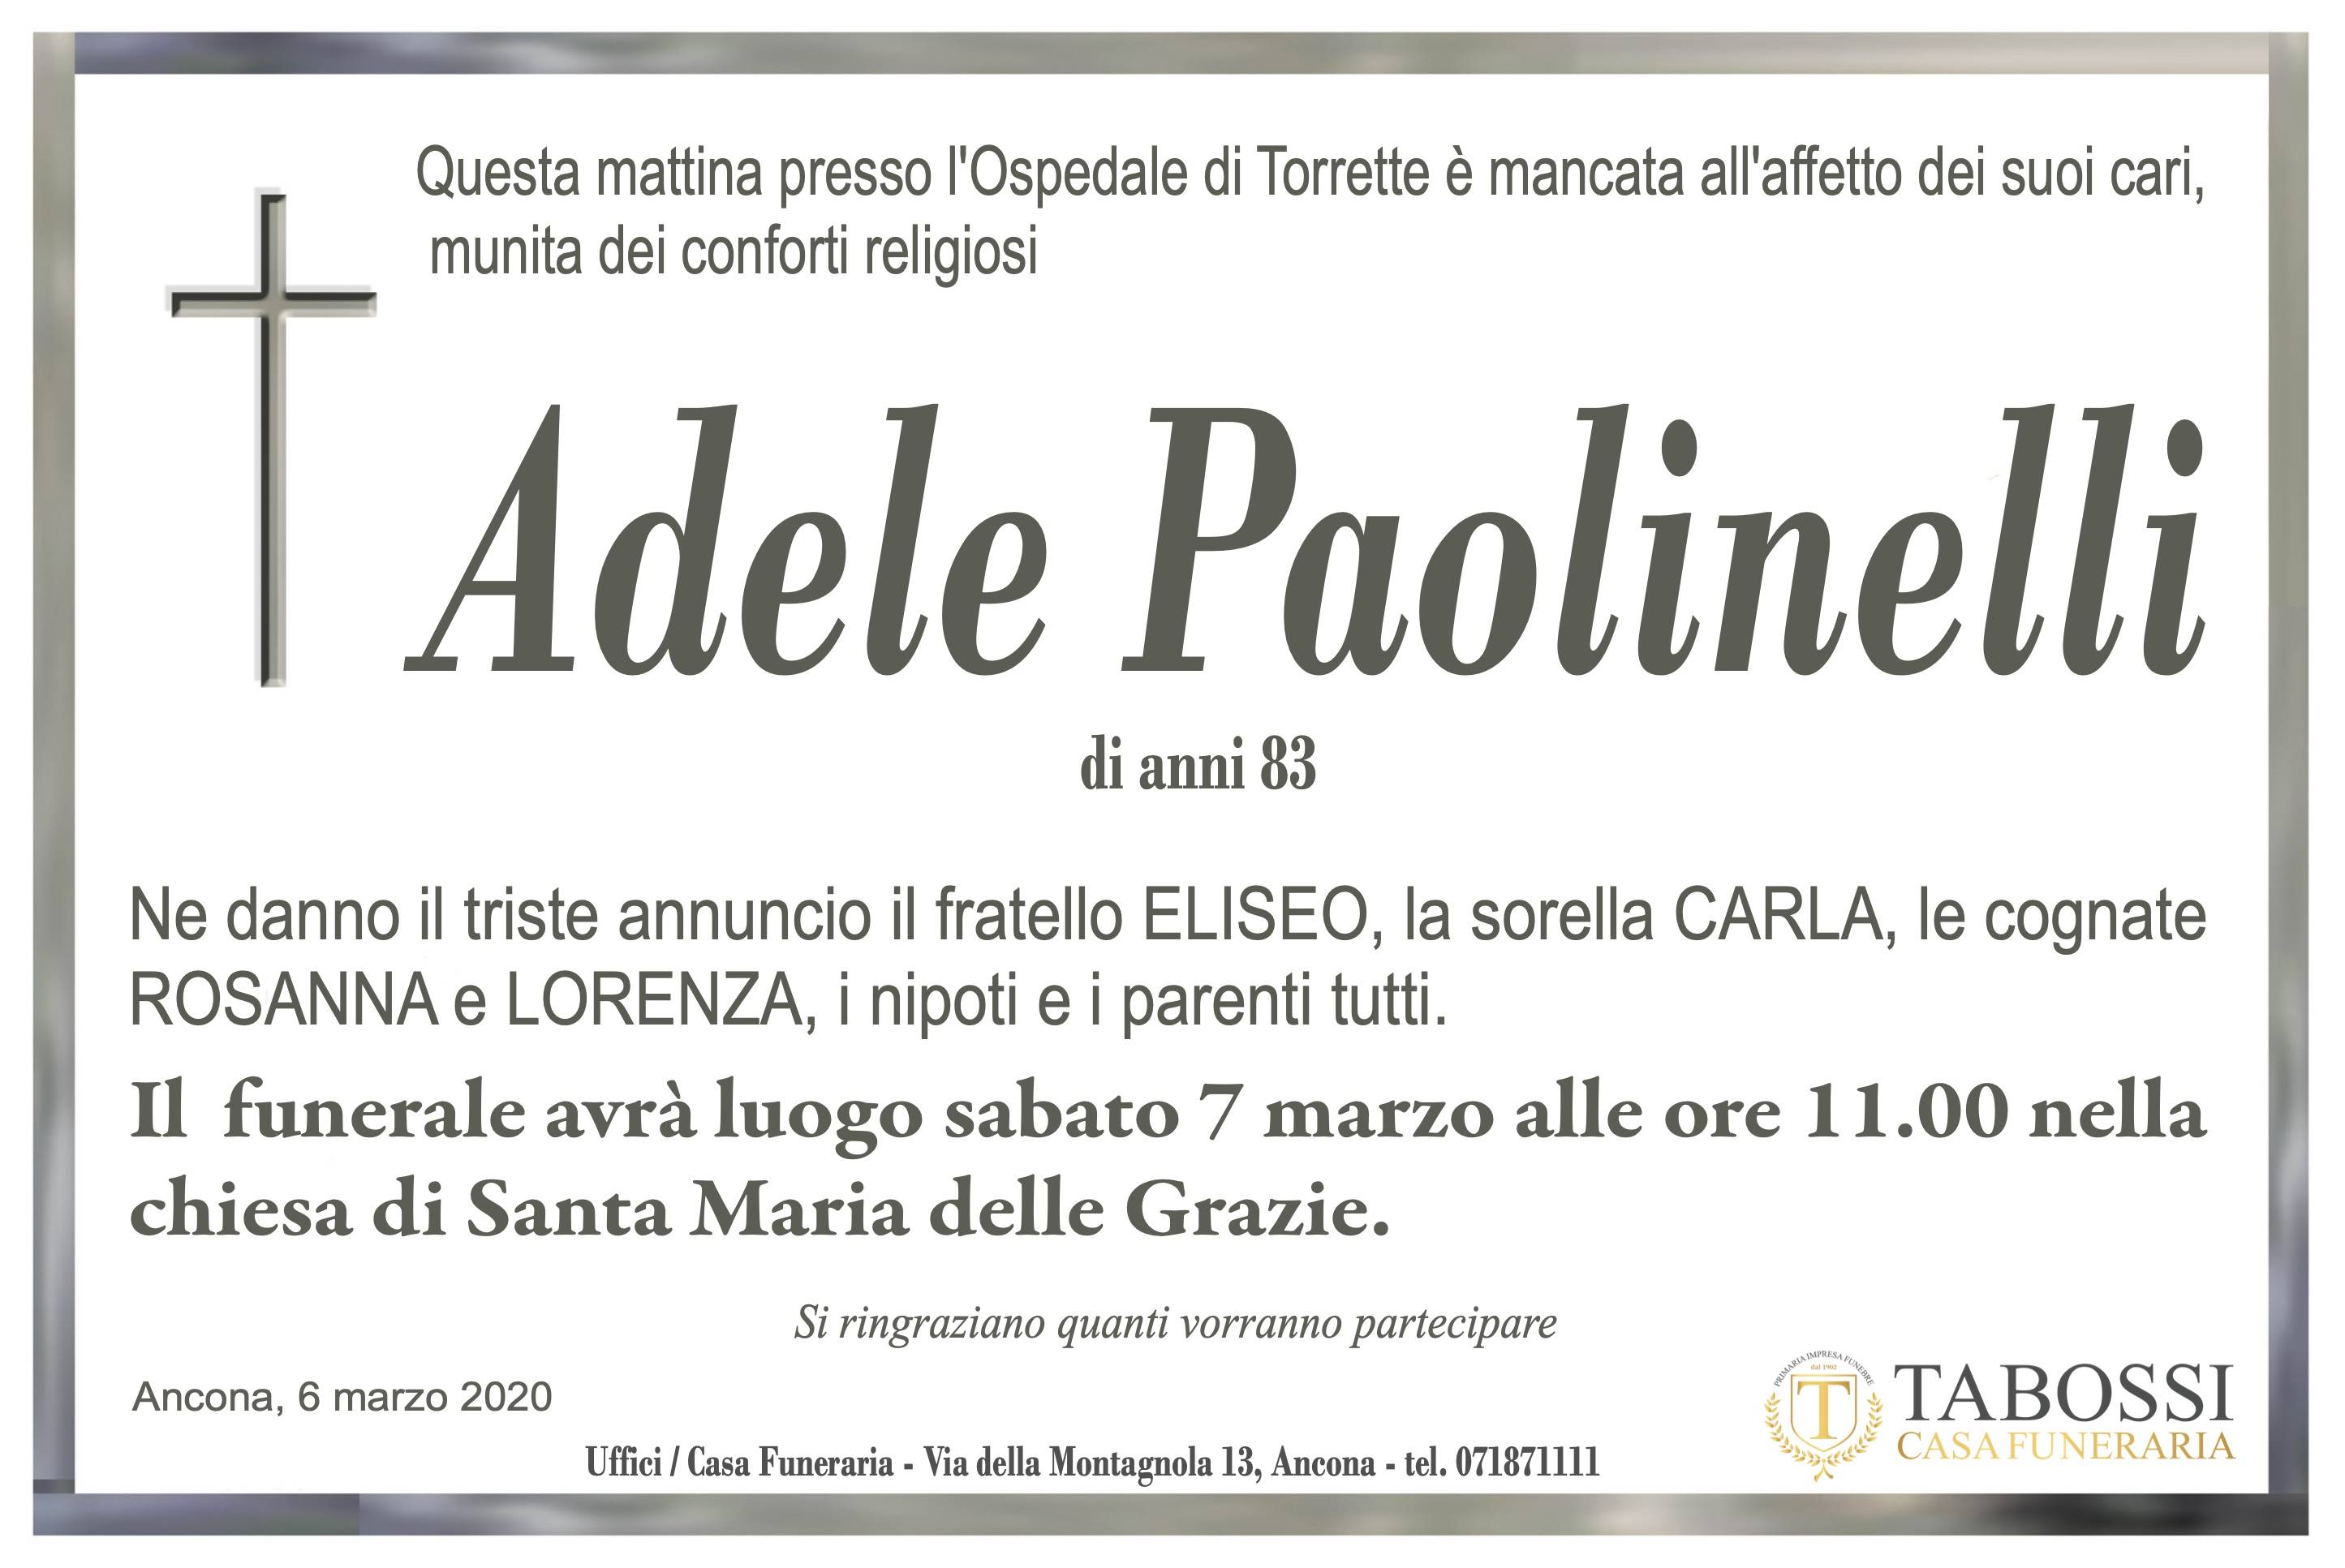 Adele Paolinelli